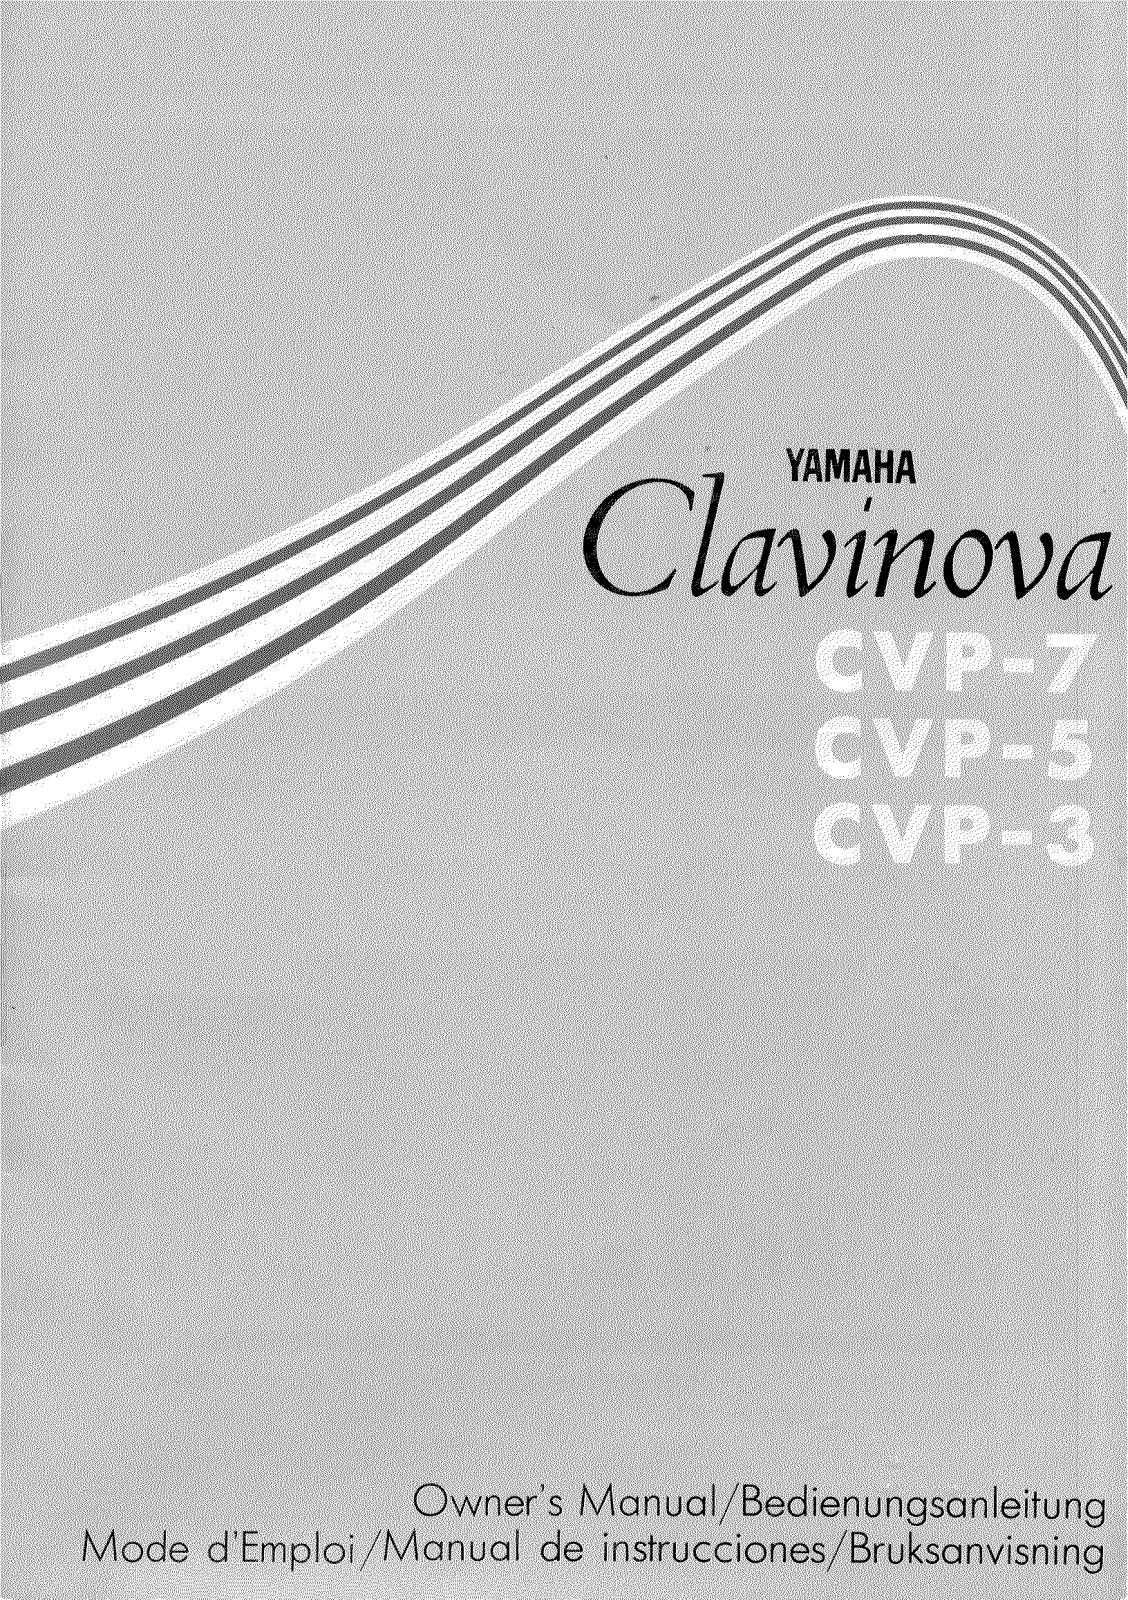 Yamaha CVP-7, CVP-5 User Manual